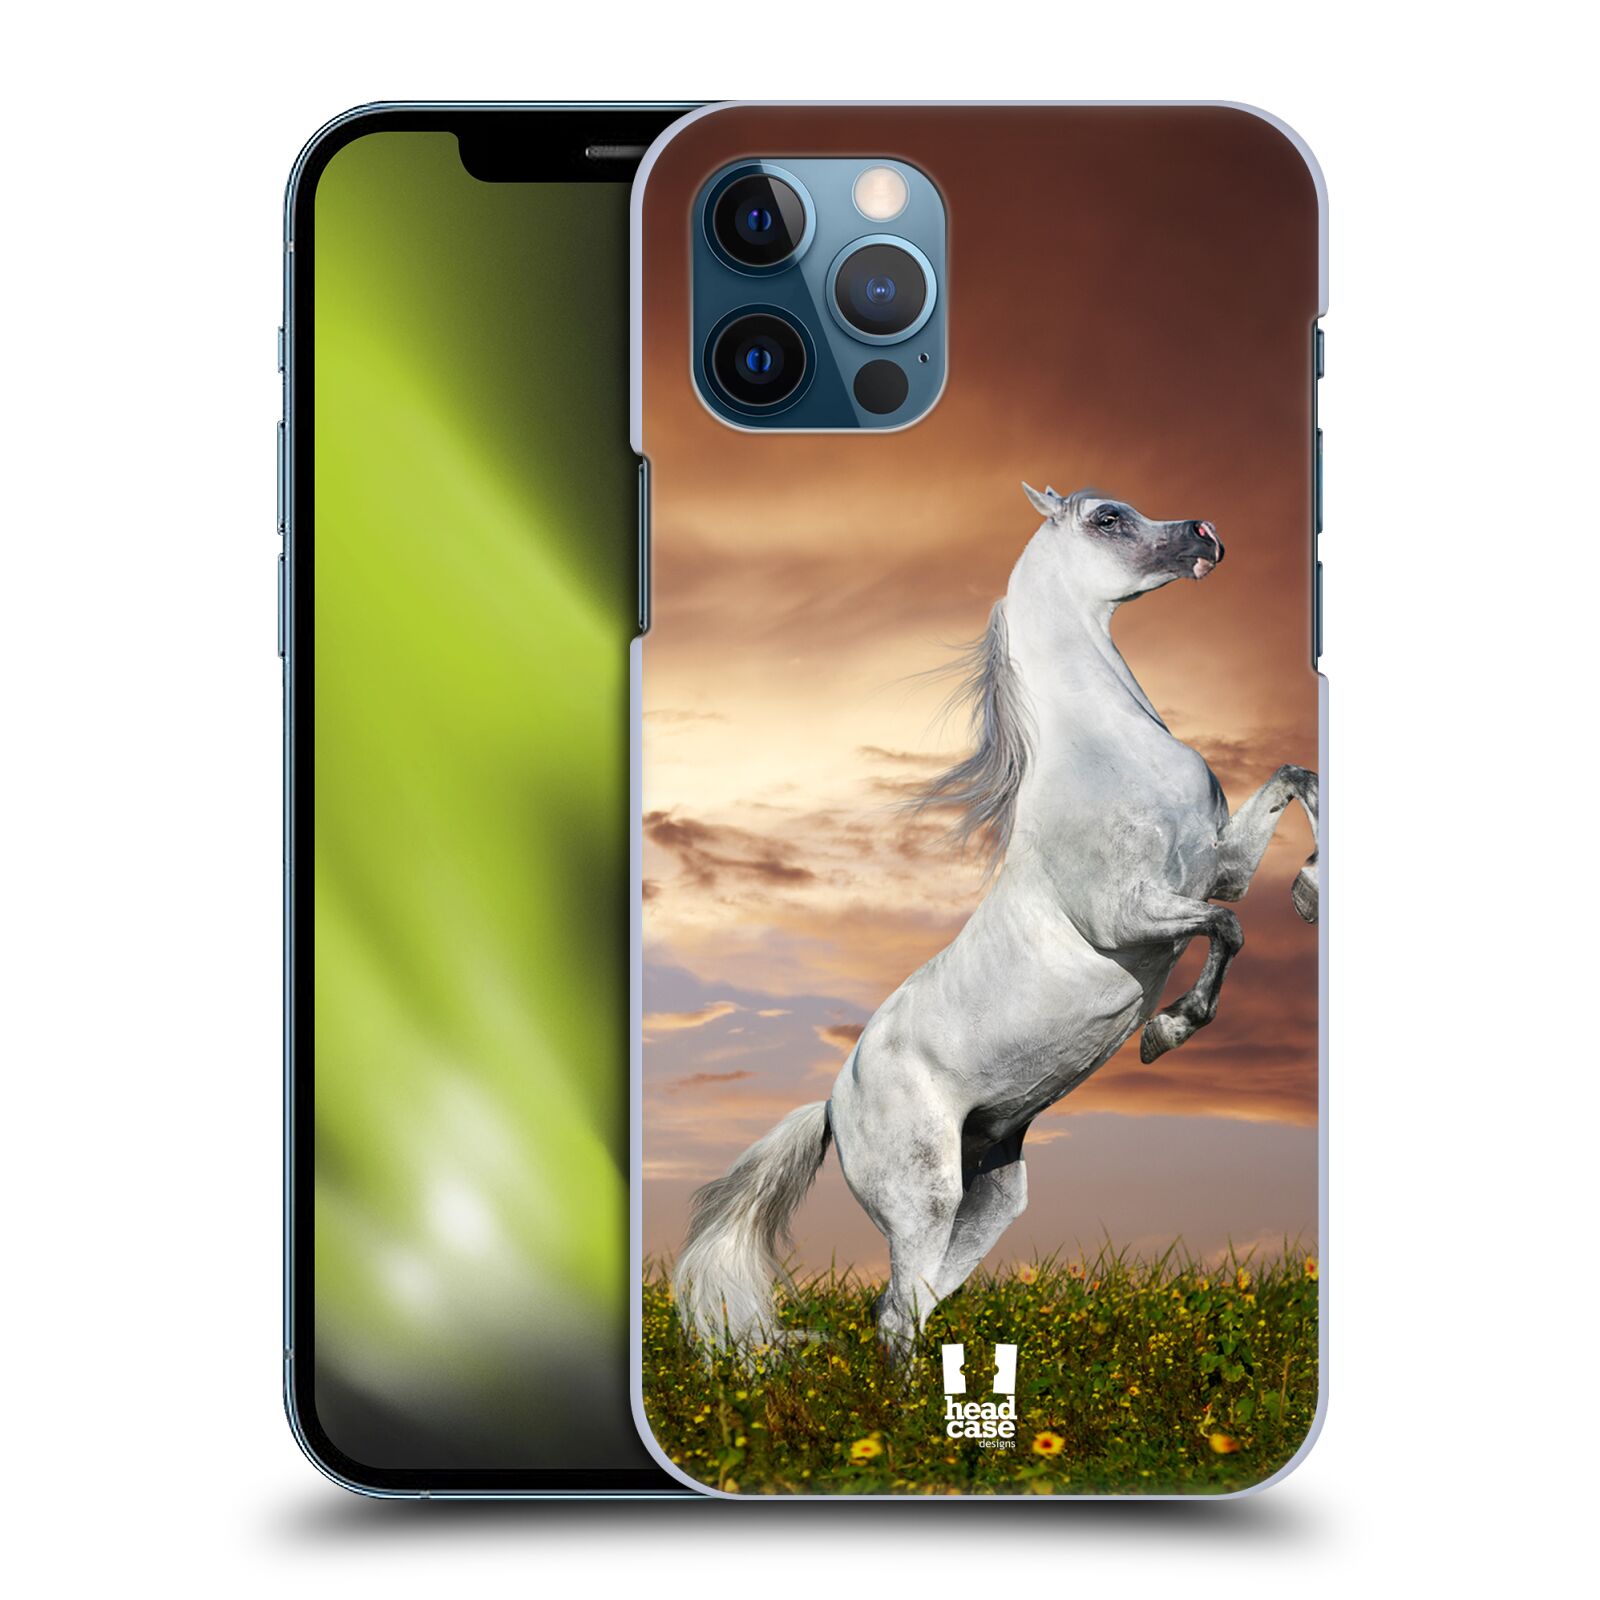 Zadní obal pro mobil Apple iPhone 12 / iPhone 12 Pro - HEAD CASE - Svět zvířat divoký kůň